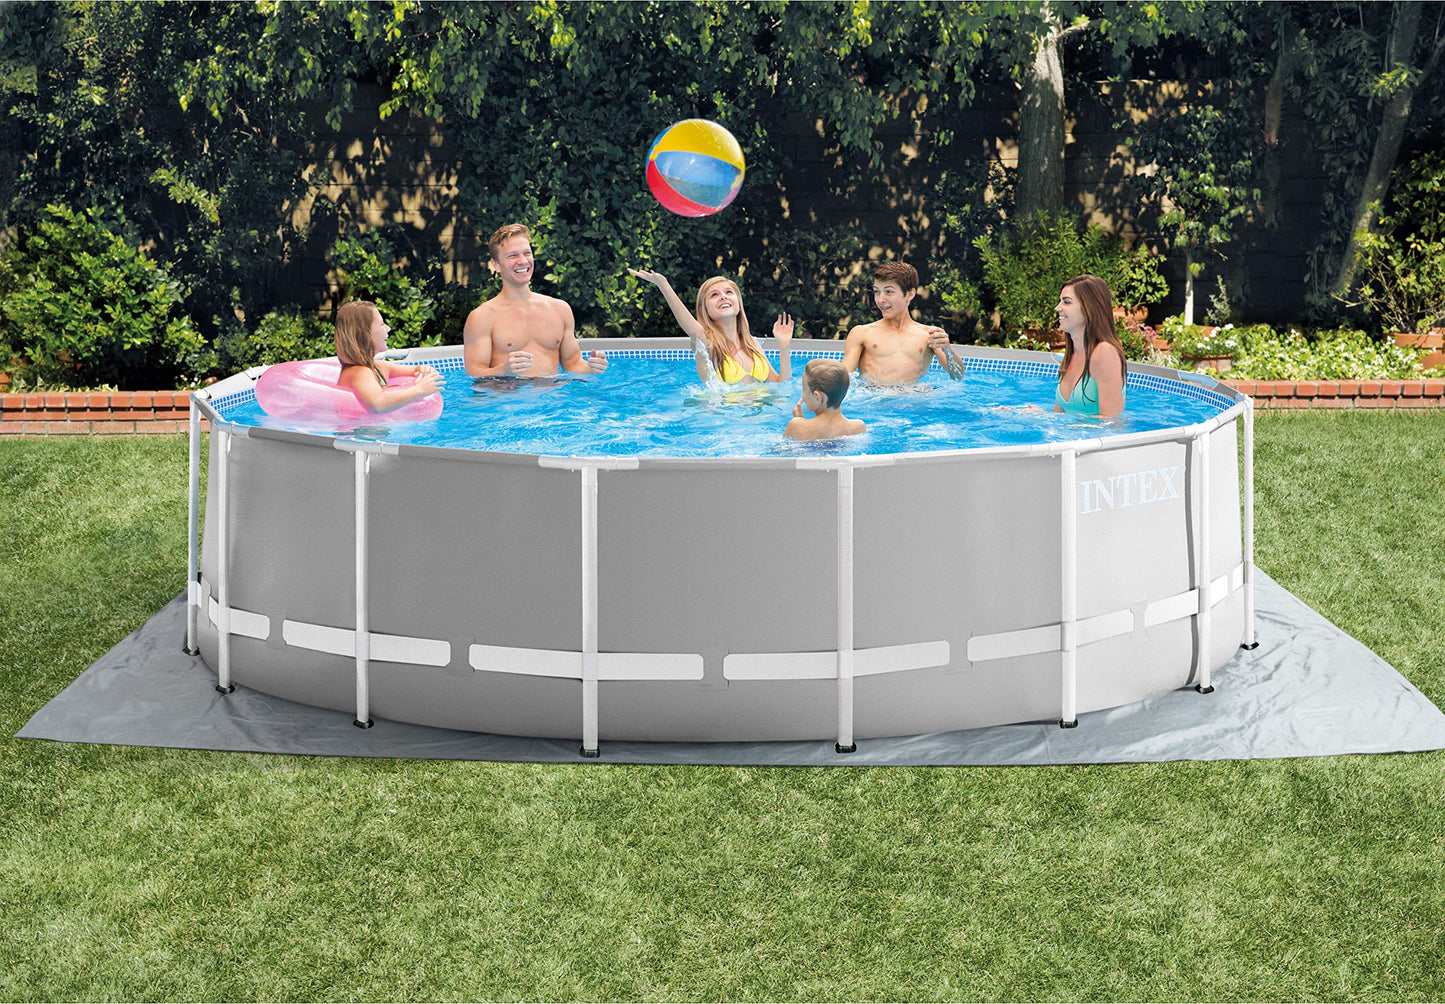 Ensemble de piscine hors sol INTEX 26725EH Prism Frame Premium : 15 pieds x 48 pouces - Comprend une pompe à filtre à cartouche 1000 GPH - Échelle amovible - Couverture de piscine - Piscine à cadre en tissu de sol 